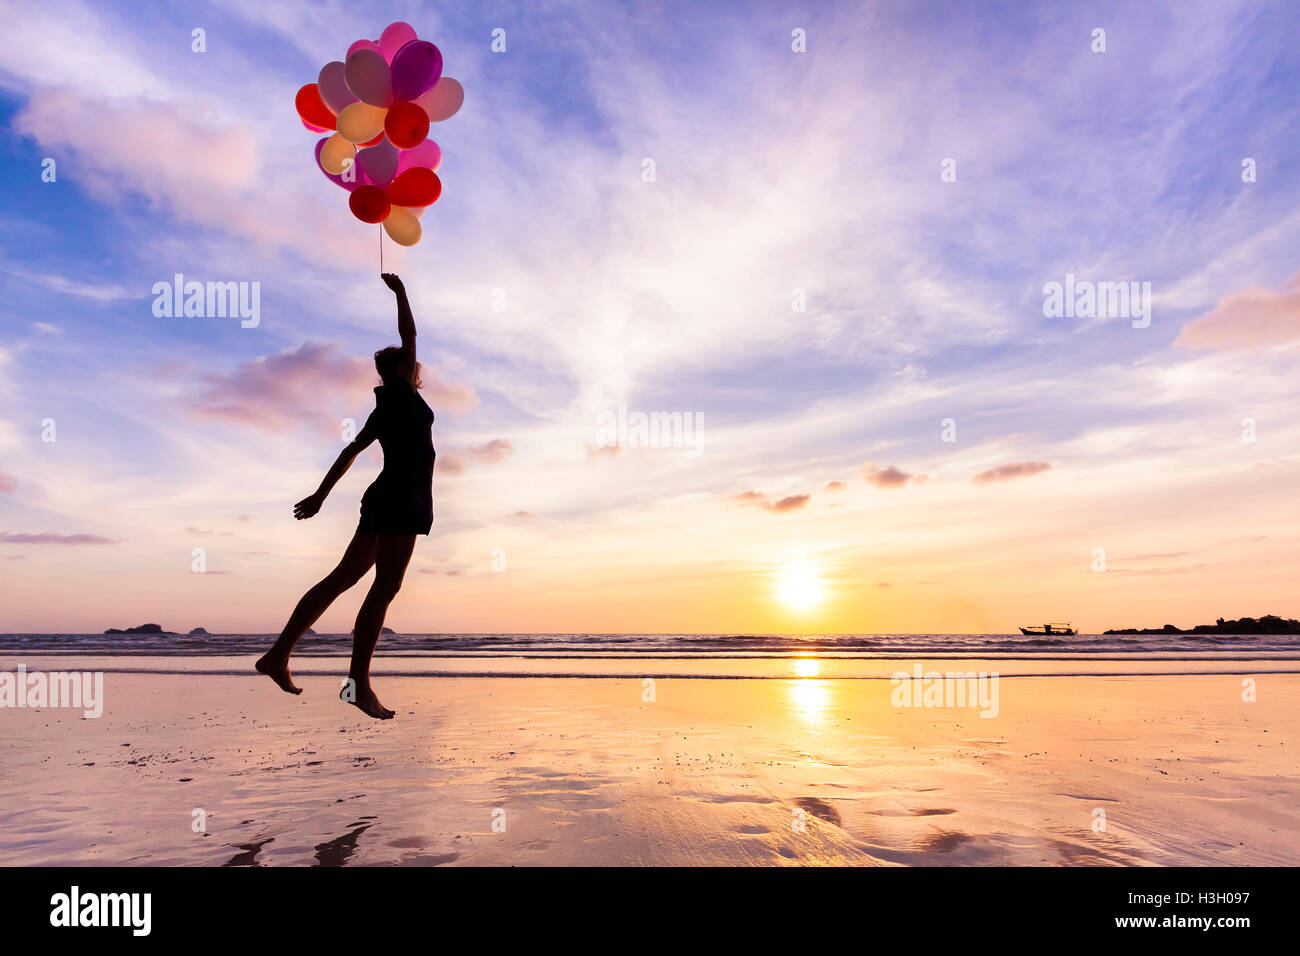 La donna in un felice sogno volare nel cielo sollevato da palloni di elio Foto Stock